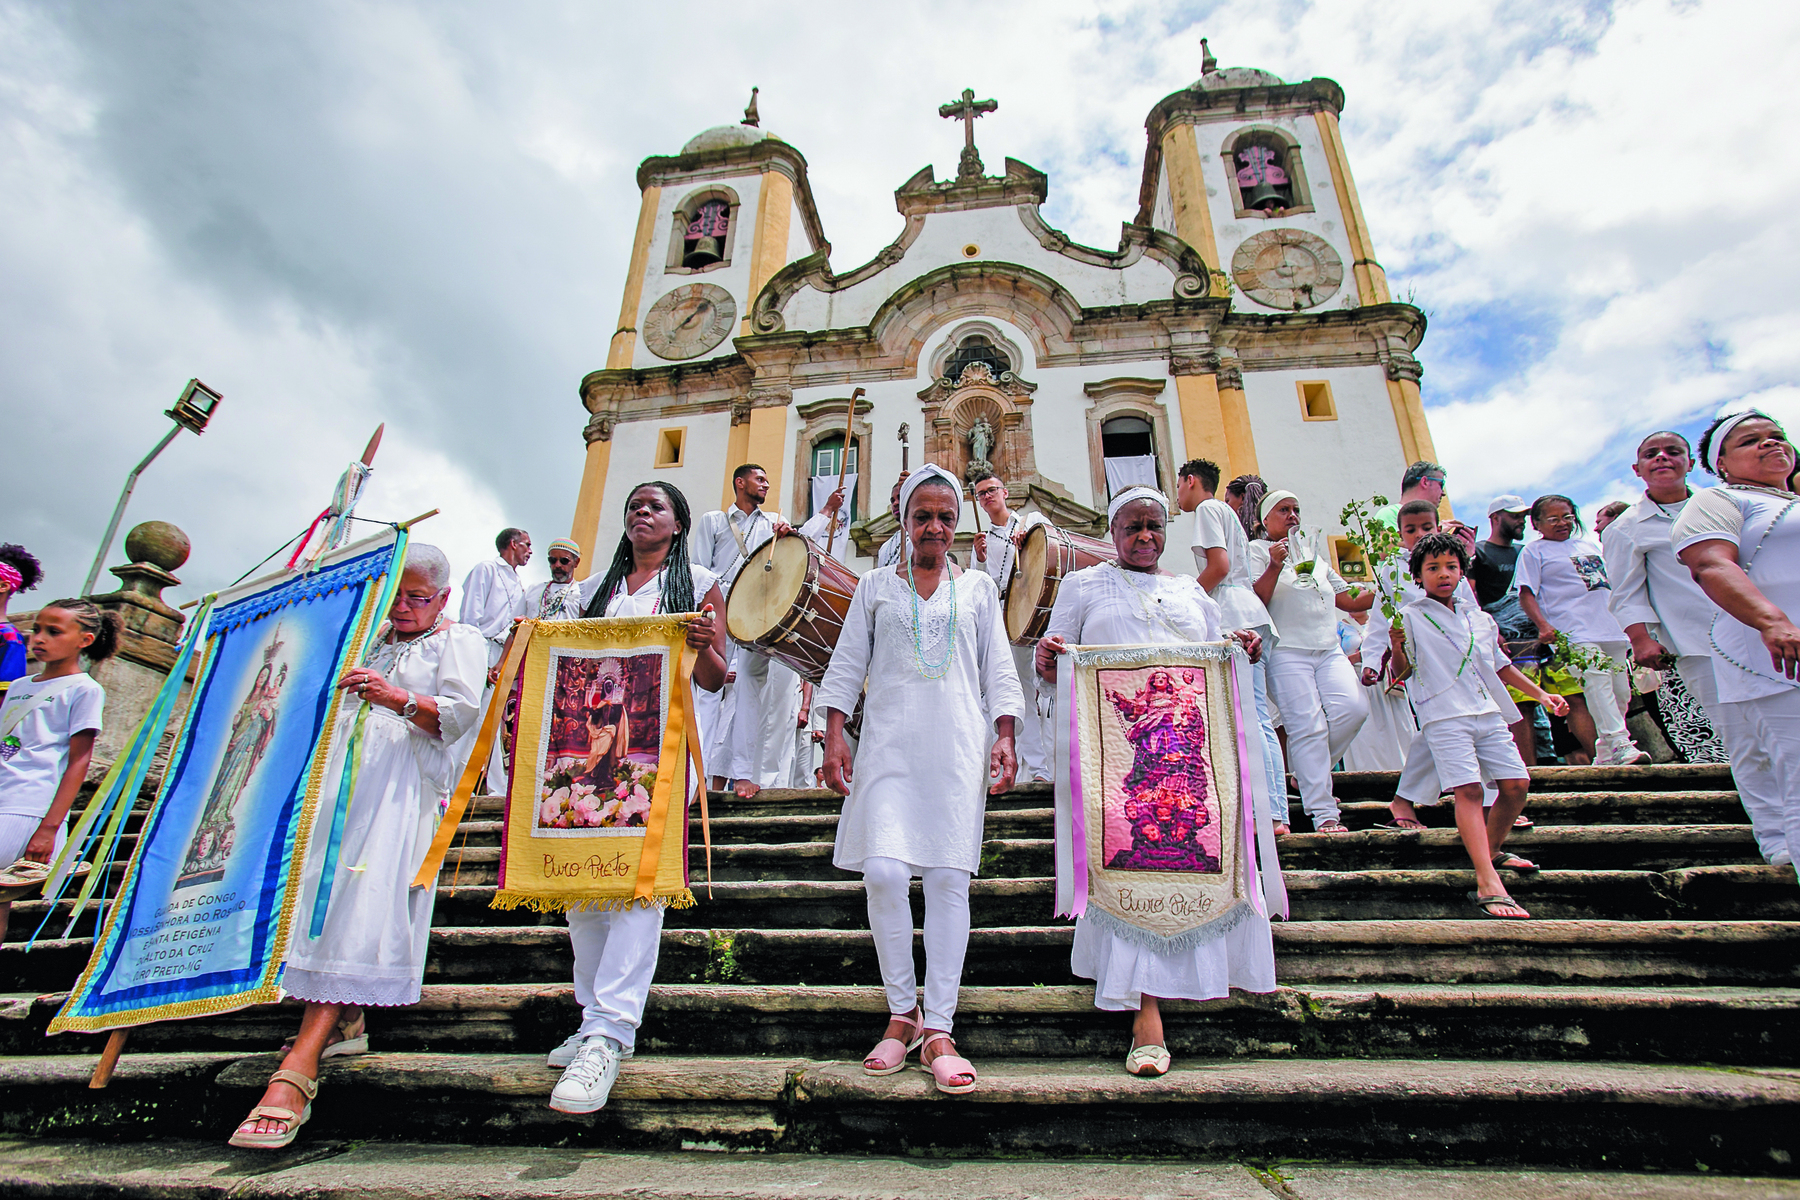 Fotografia. Pessoas vestidas de branco em uma escadaria em frente a uma igreja. À frente, quatro mulheres negras. Três delas carregam painéis com imagens de santos.